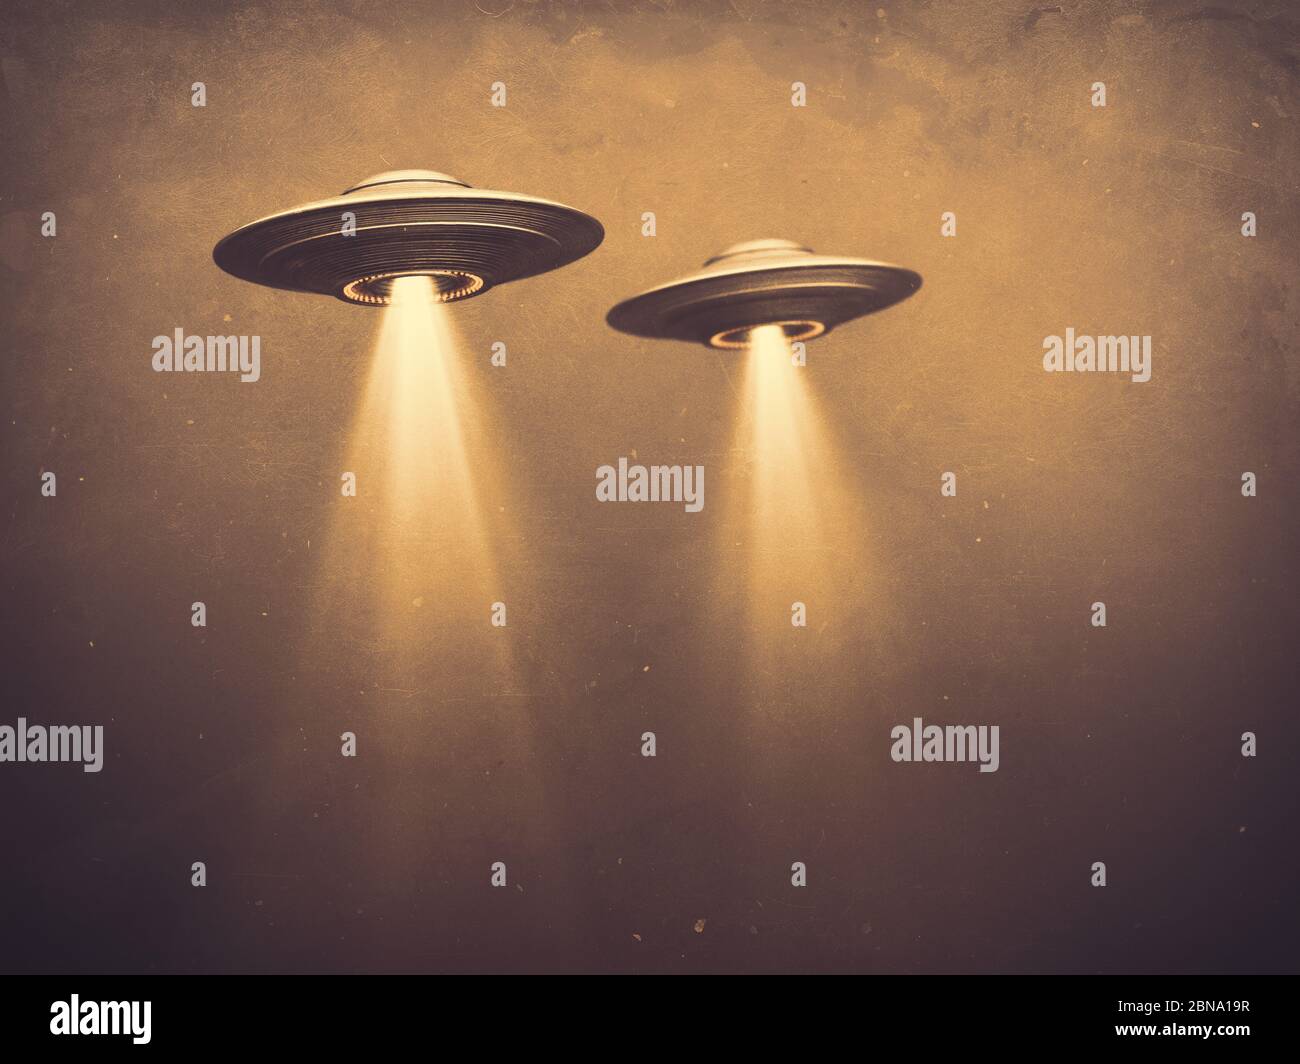 Due UFO volanti in nebbia con luce sotto. Illustrazione 3D Fotografia monocromatica con tonalità seppia antica. Immagine concettuale con spazio vuoto sotto gli UFO Foto Stock